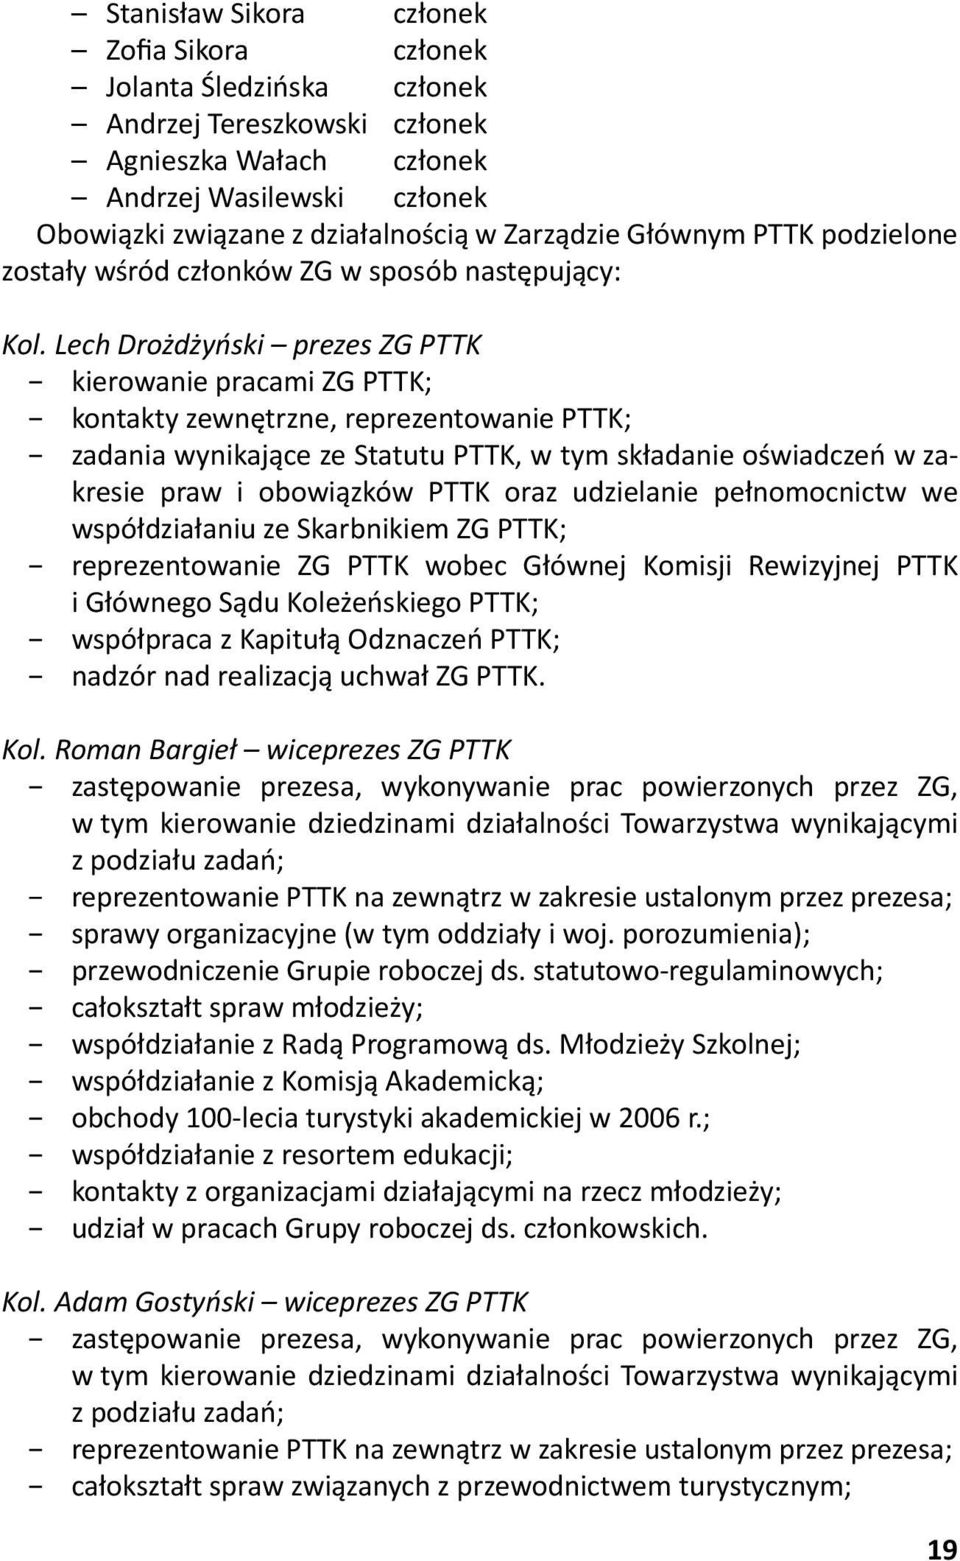 Lech Drożdżyński prezes ZG PTTK kierowanie pracami ZG PTTK; kontakty zewnętrzne, reprezentowanie PTTK; zadania wynikające ze Statutu PTTK, w tym składanie oświadczeń w zakresie praw i obowiązków PTTK